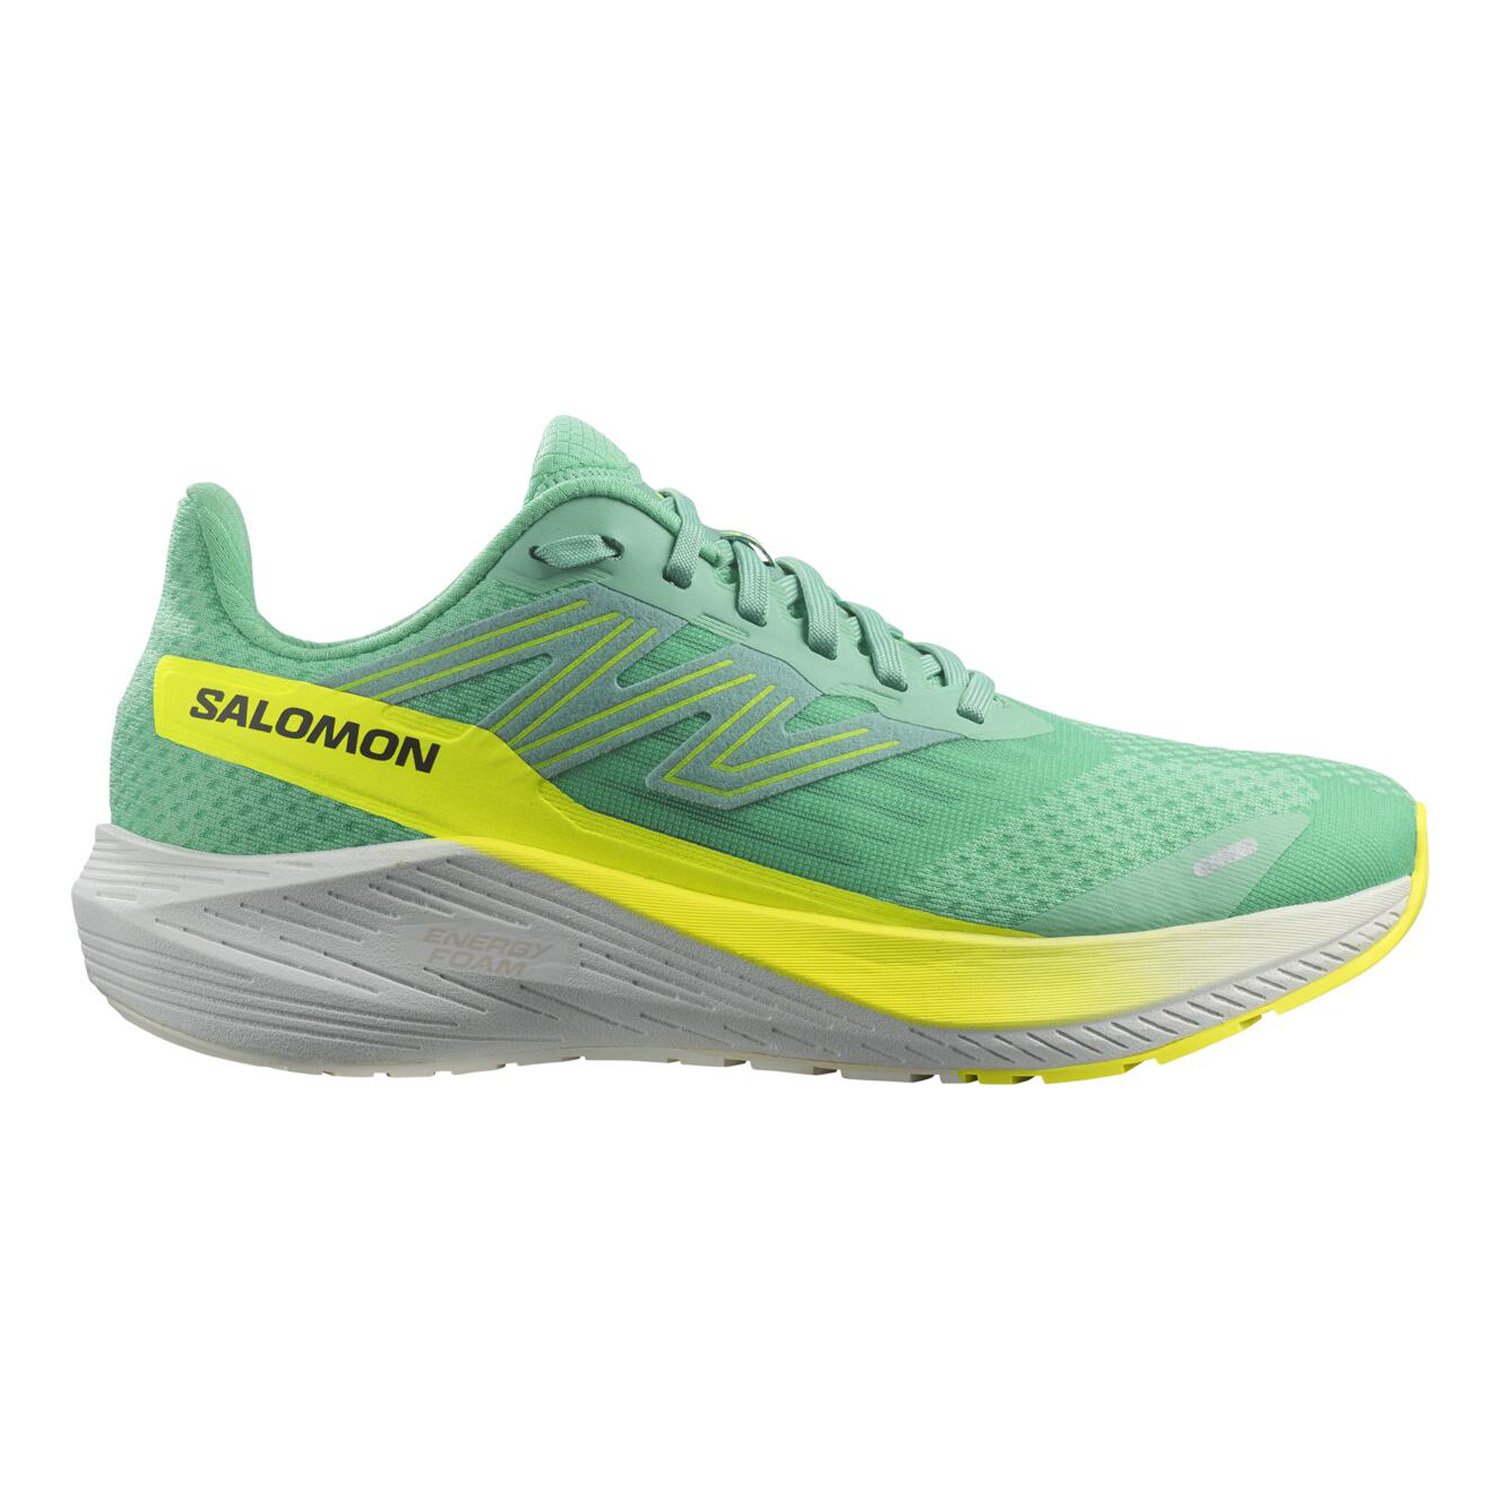 Salomon Aero Blaze Kadın Yol Koşu Ayakkabısı - Yeşil - 1